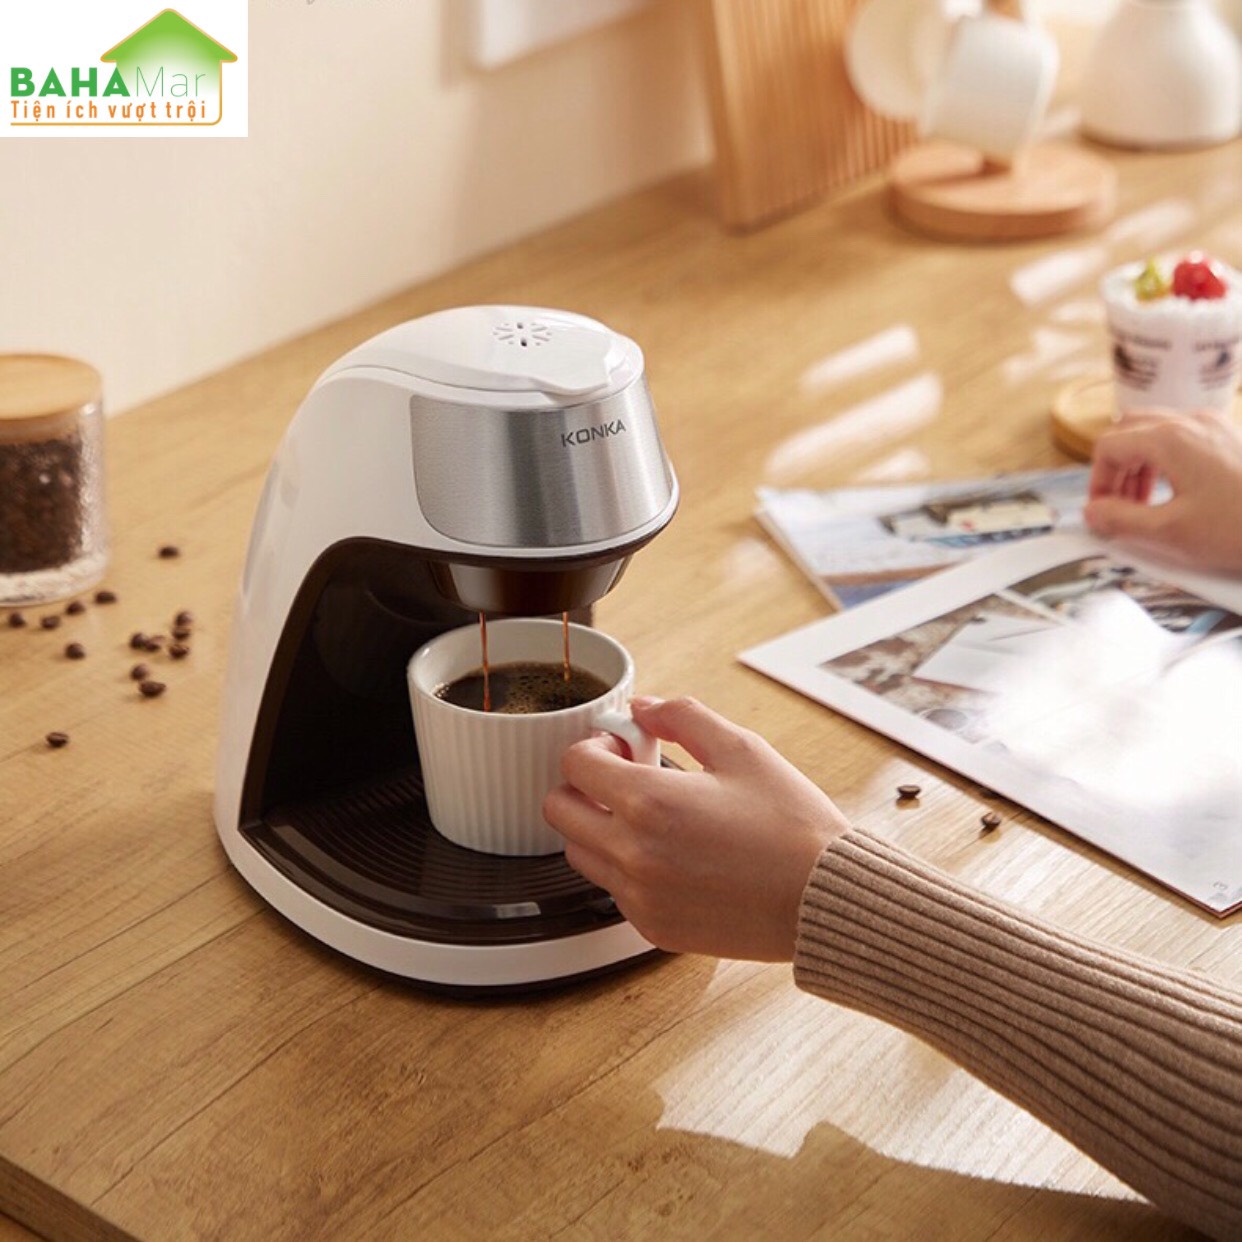 MÁY PHA CAFE, TRÀ TỰ ĐỘNG NHỎ GIỌT "BAHAMAR" Lọc và nhỏ giọt làm cho nước và bột cà phê hoàn toàn hòa quyện thẩm thấu. Đảm bảo rằng mỗi giọt mang hương vị êm dịu và thơm ngon